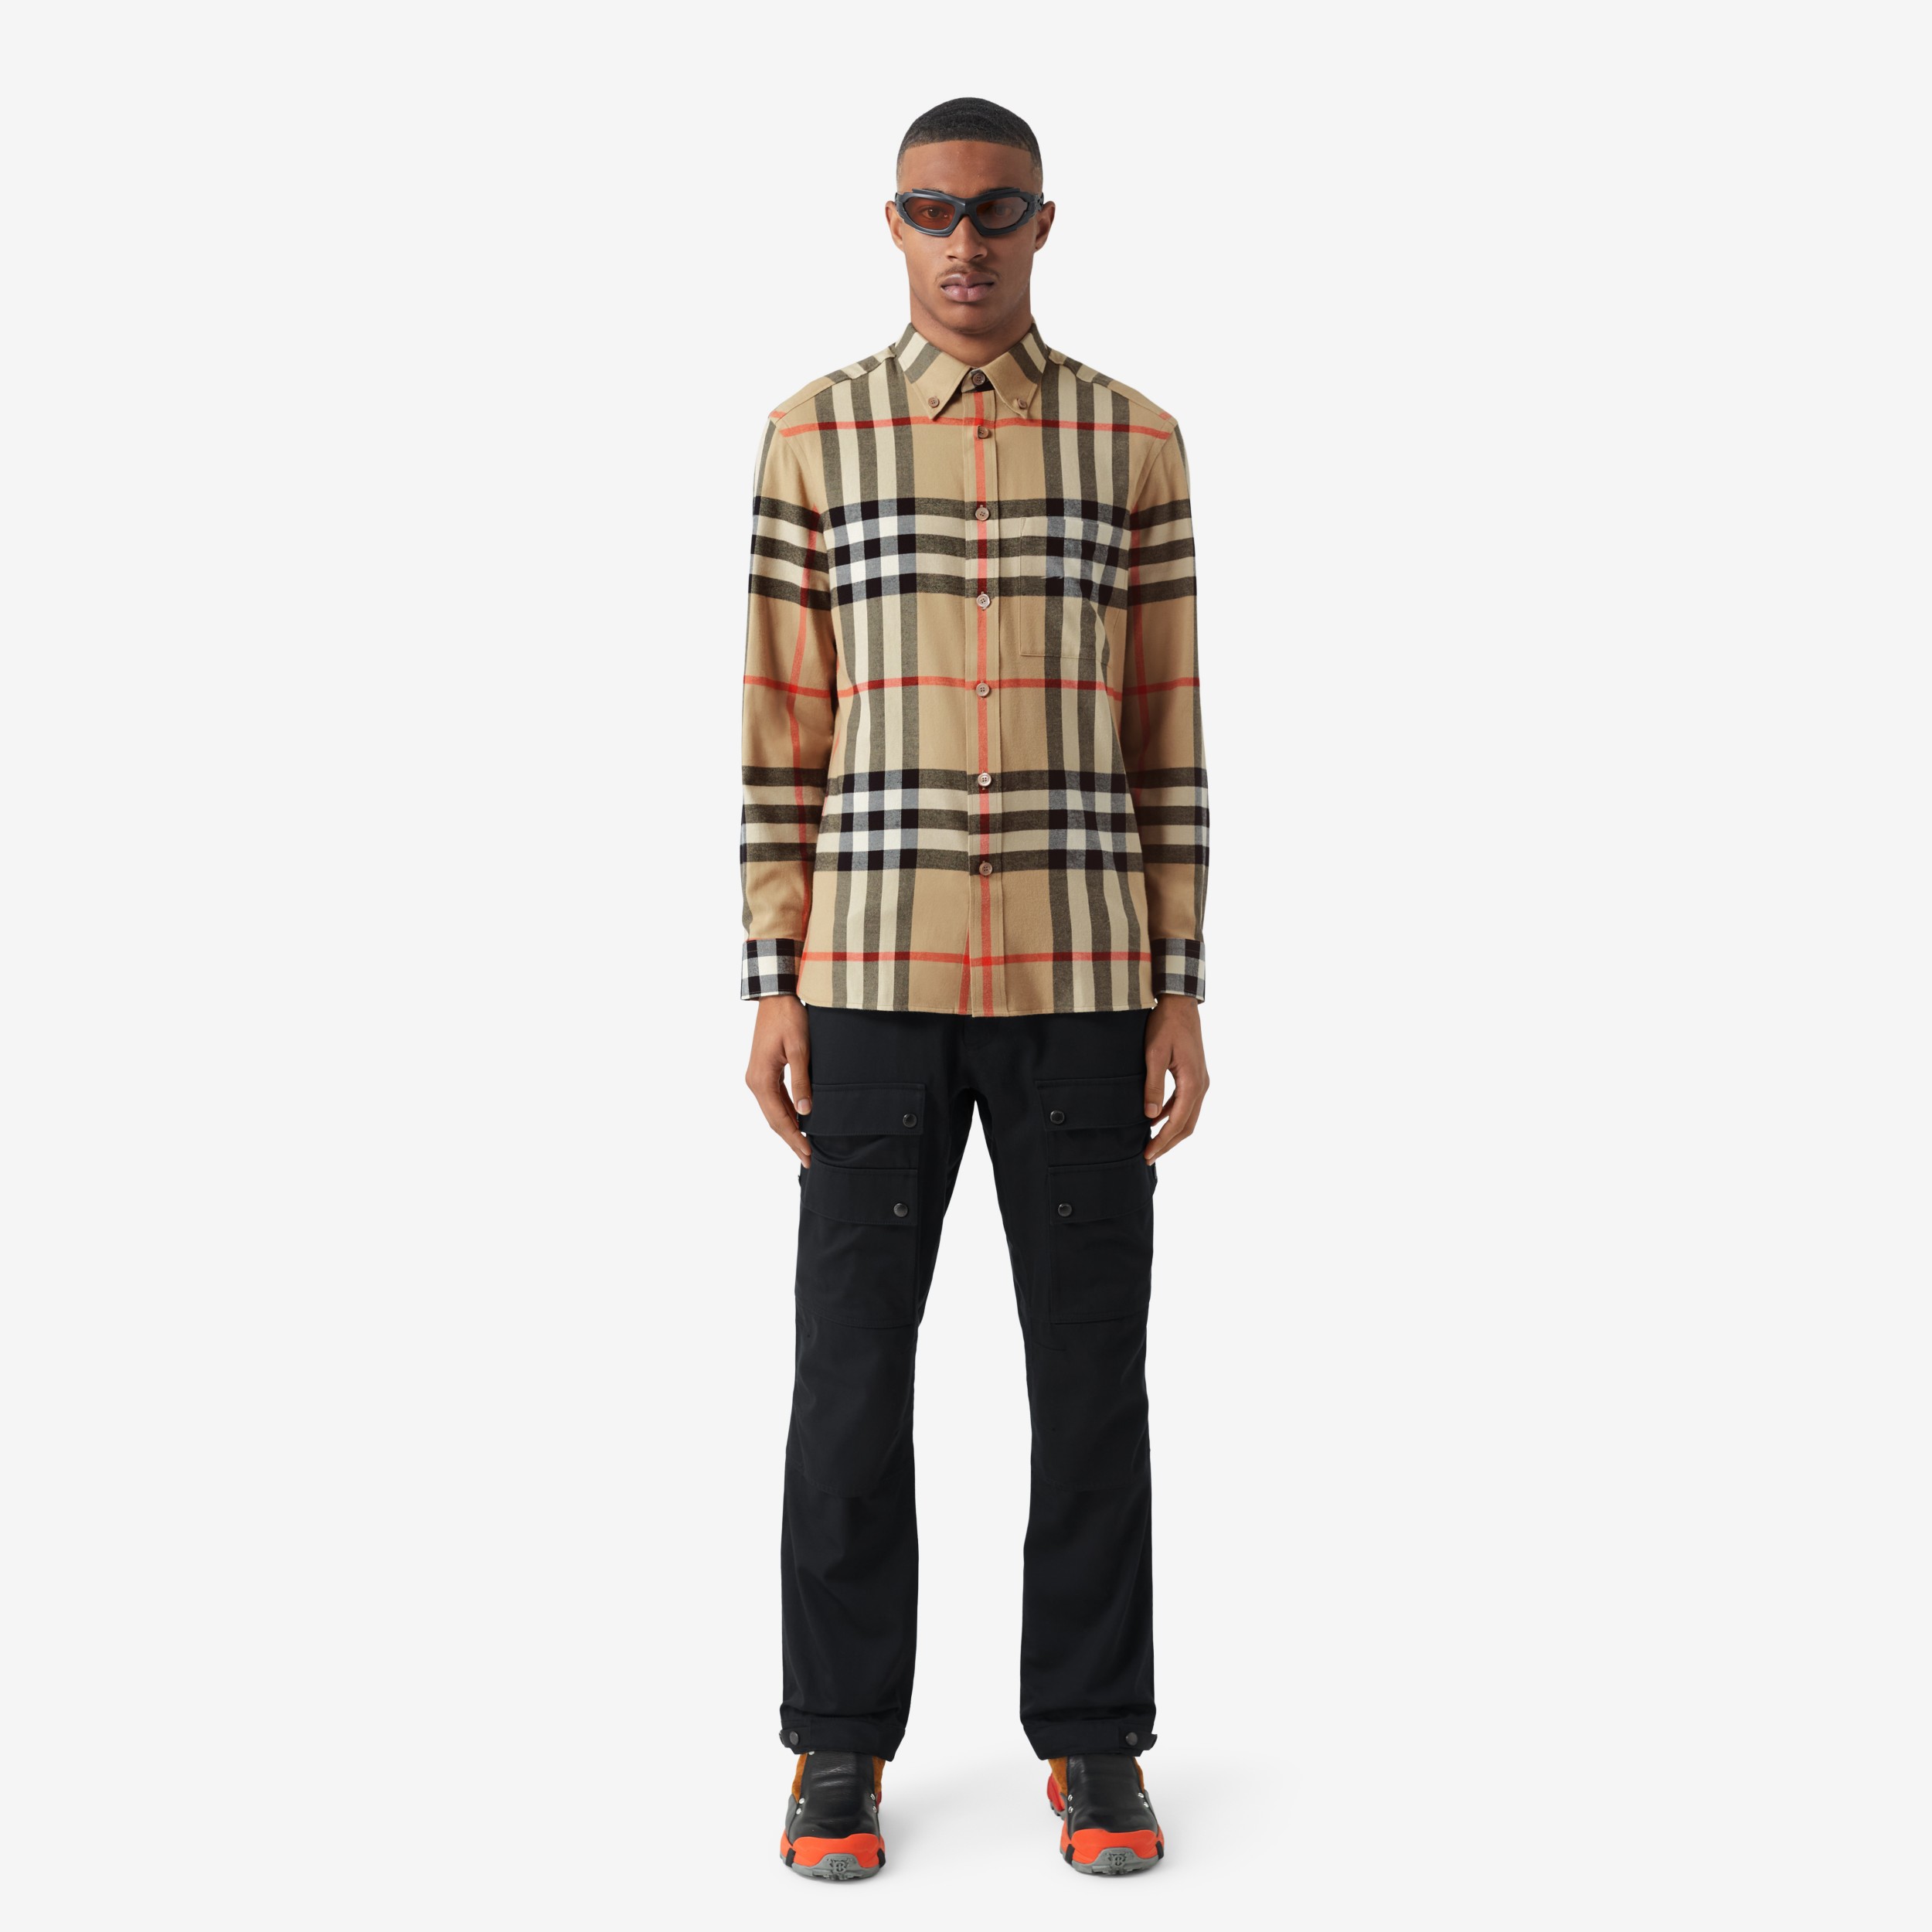 Actualizar 41+ imagen burberry flannels